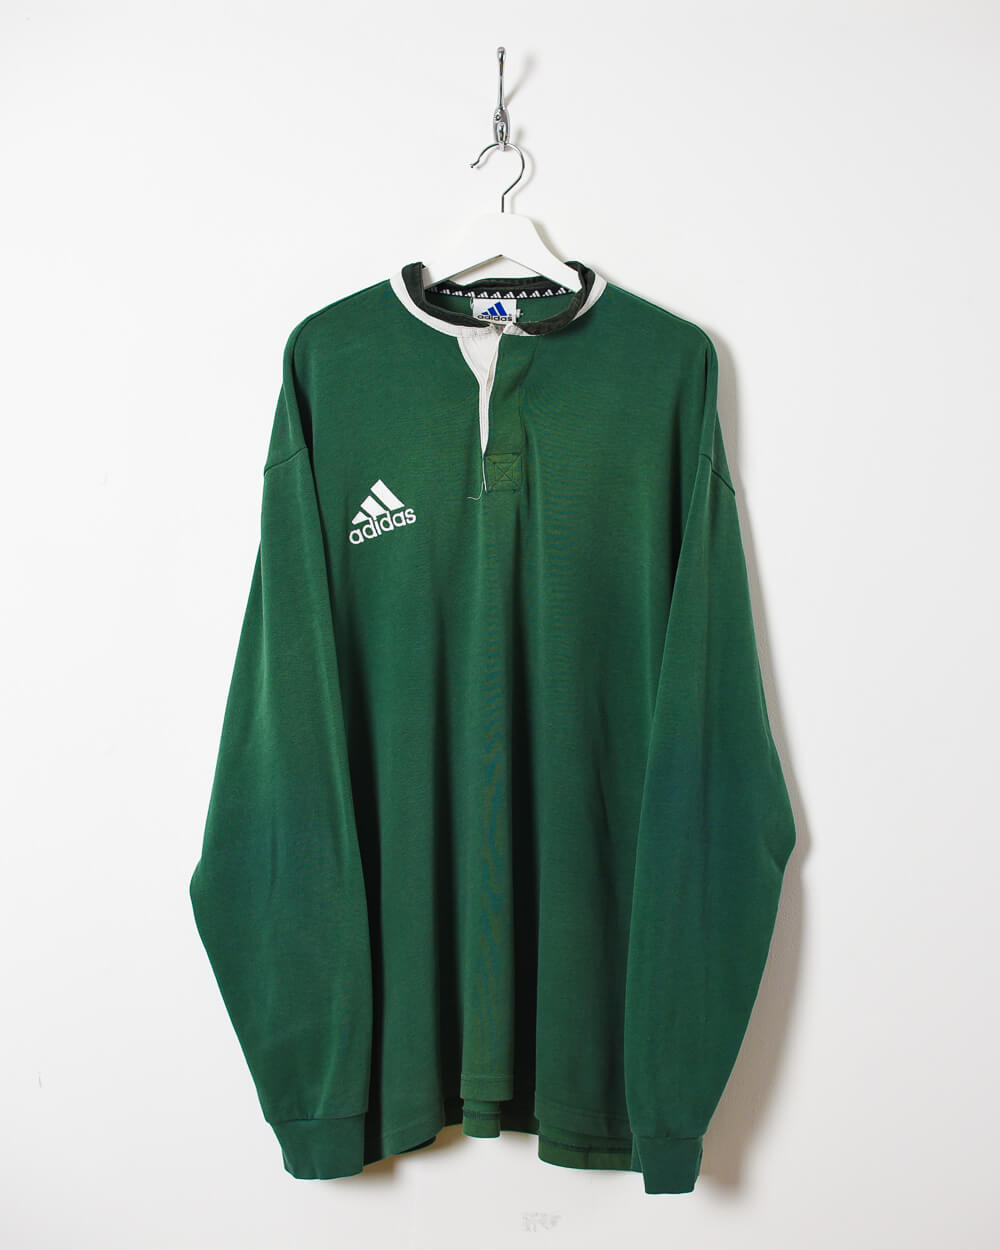 Green Adidas Sweatshirt - XX-Large